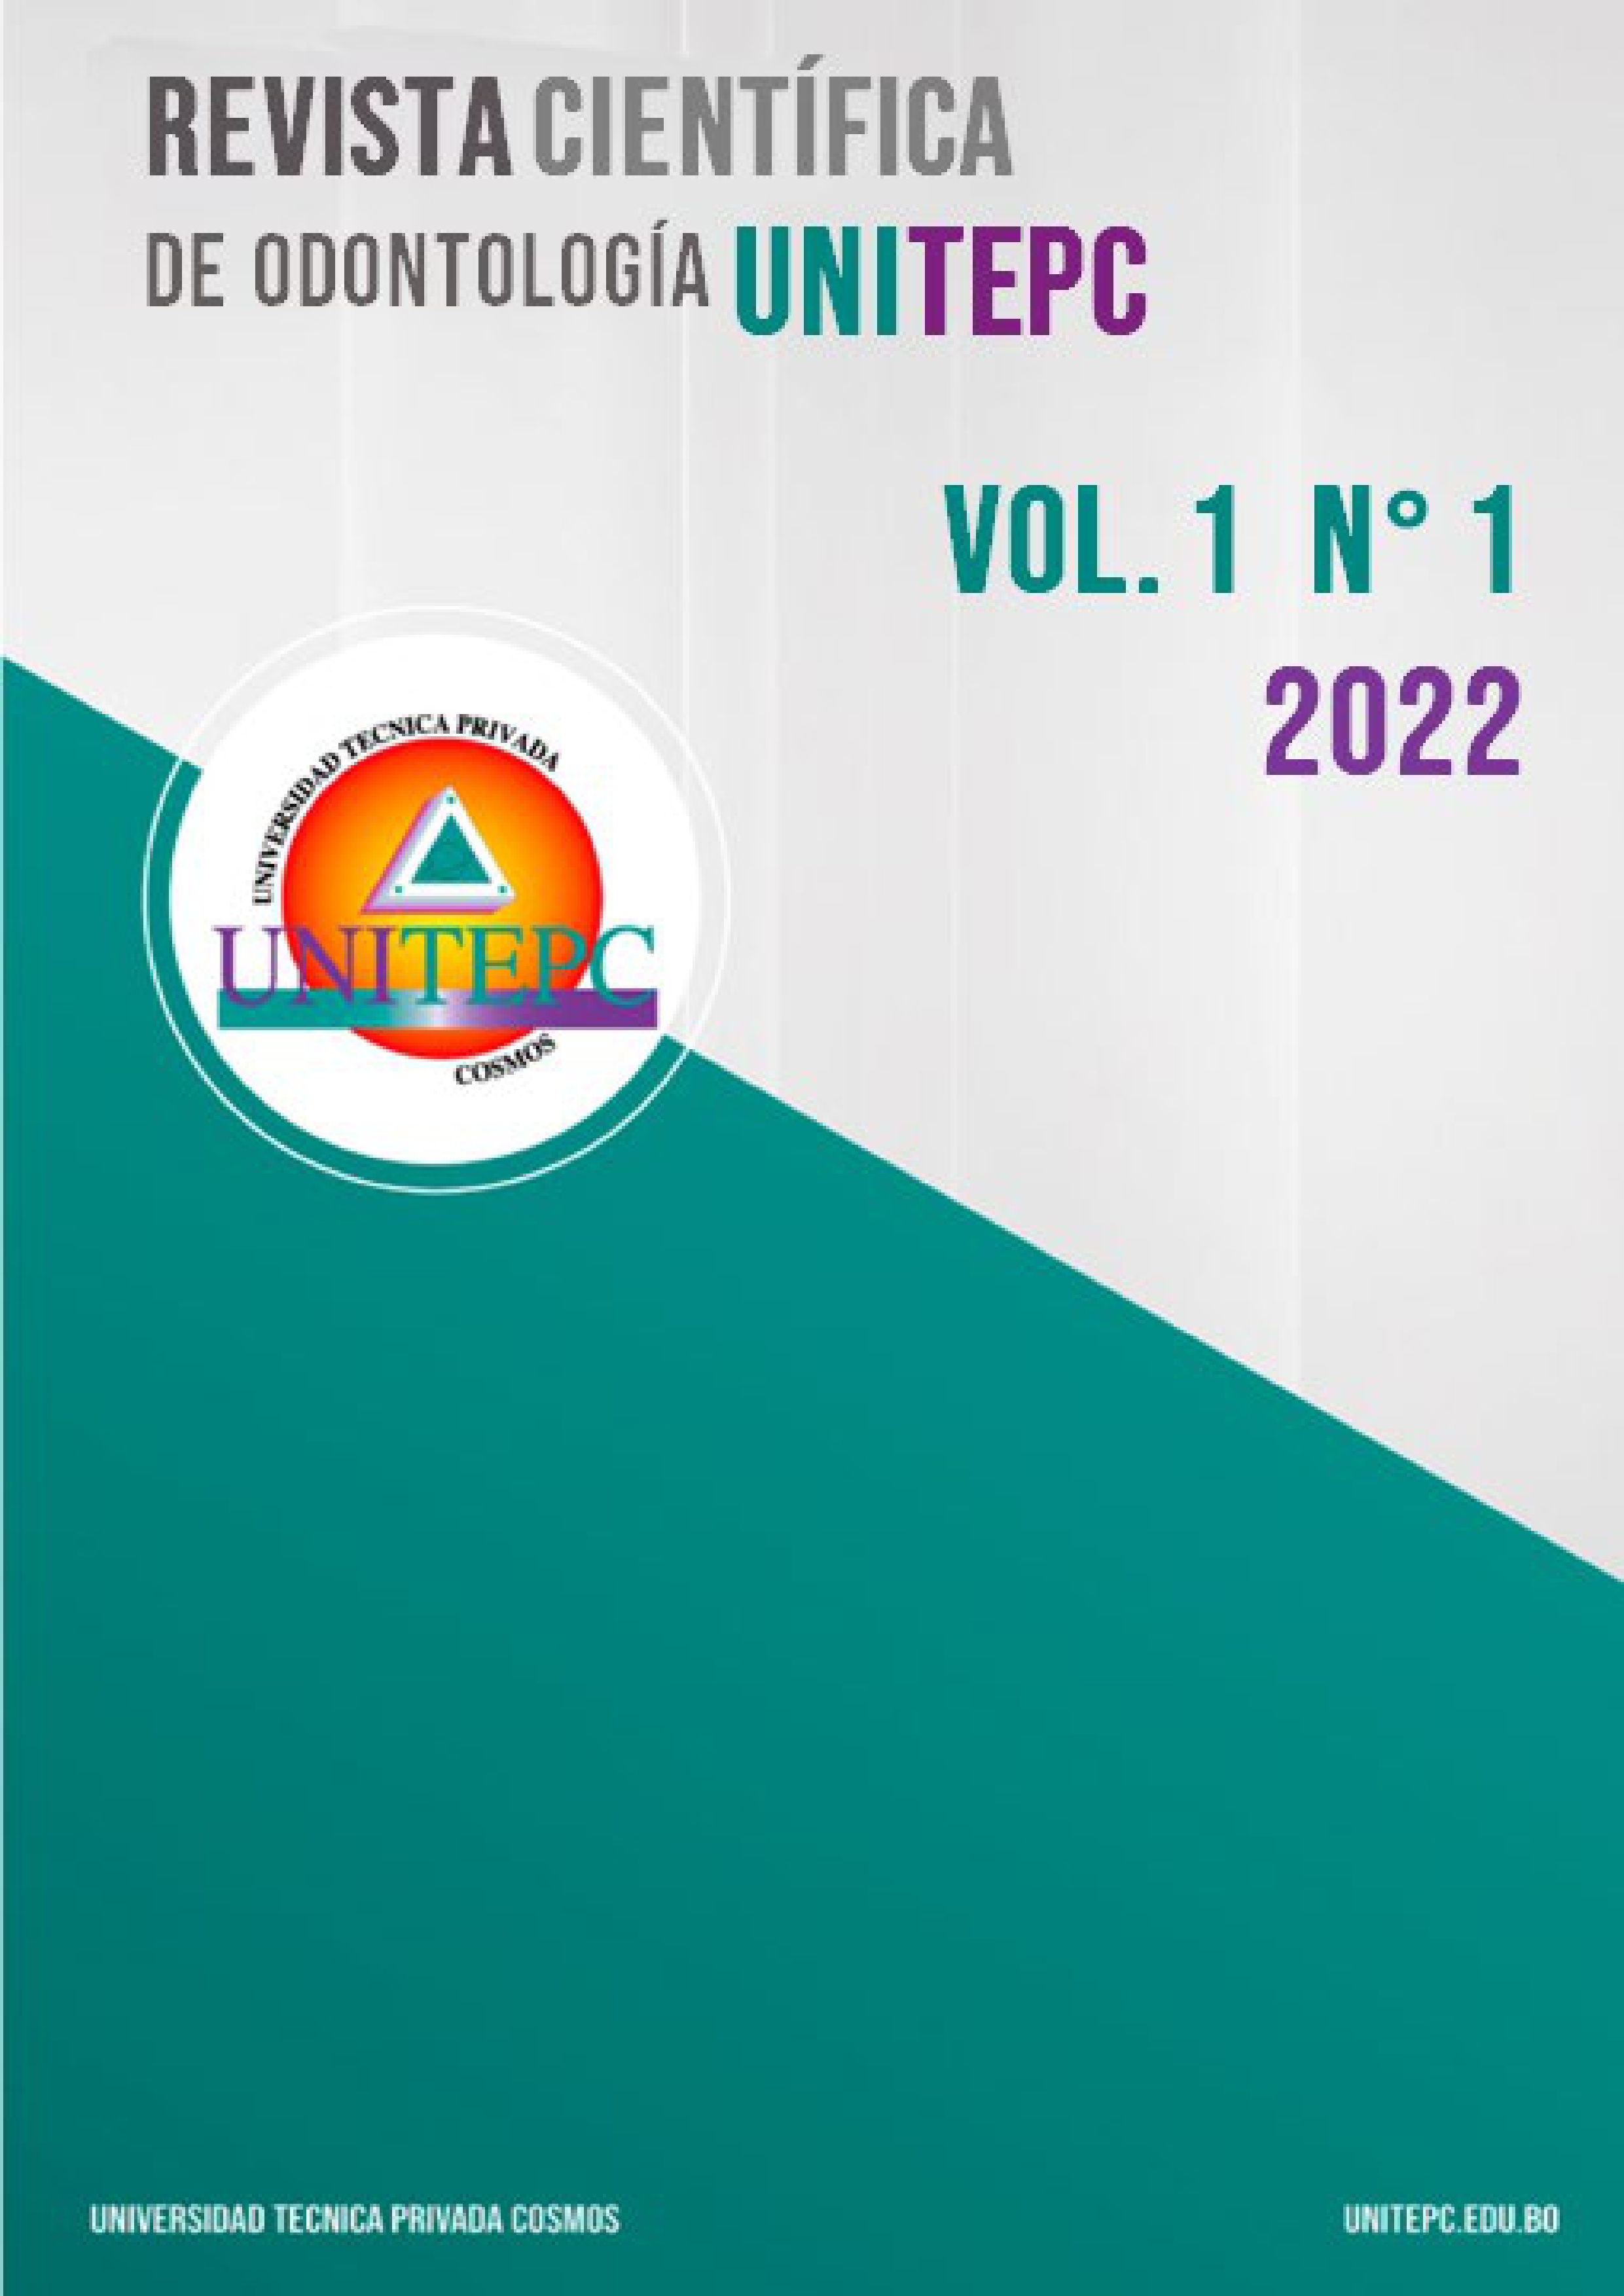 					View Vol. 1 No. 1 (2022): Revista Científica de Odontología UNITEPC
				